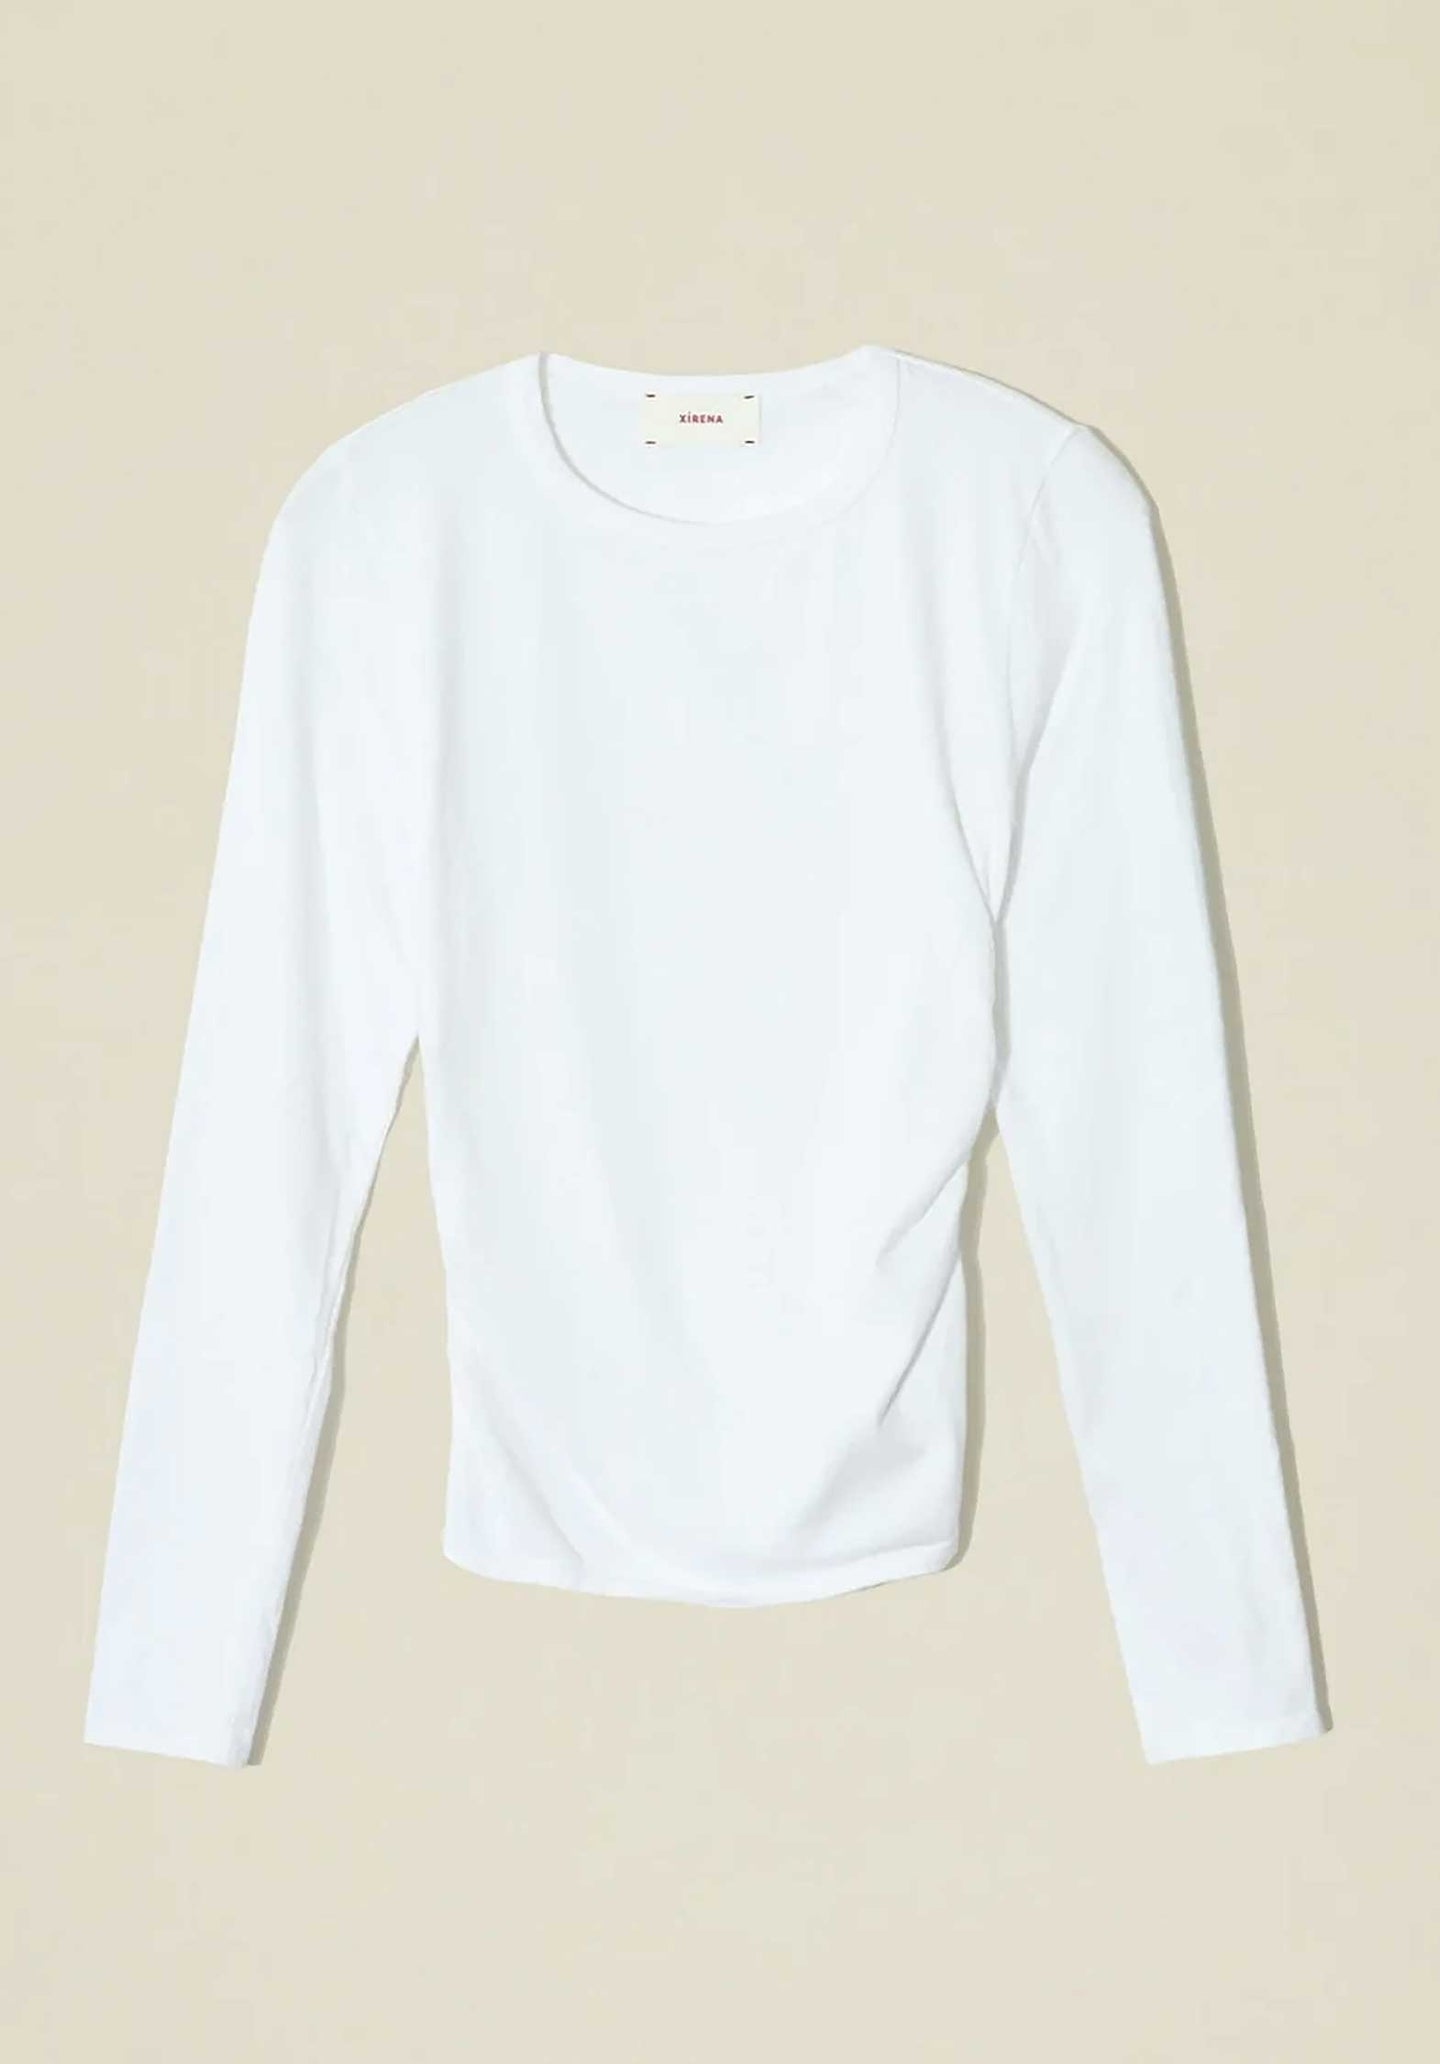 Tshirt X356322 Frankie L S Top White